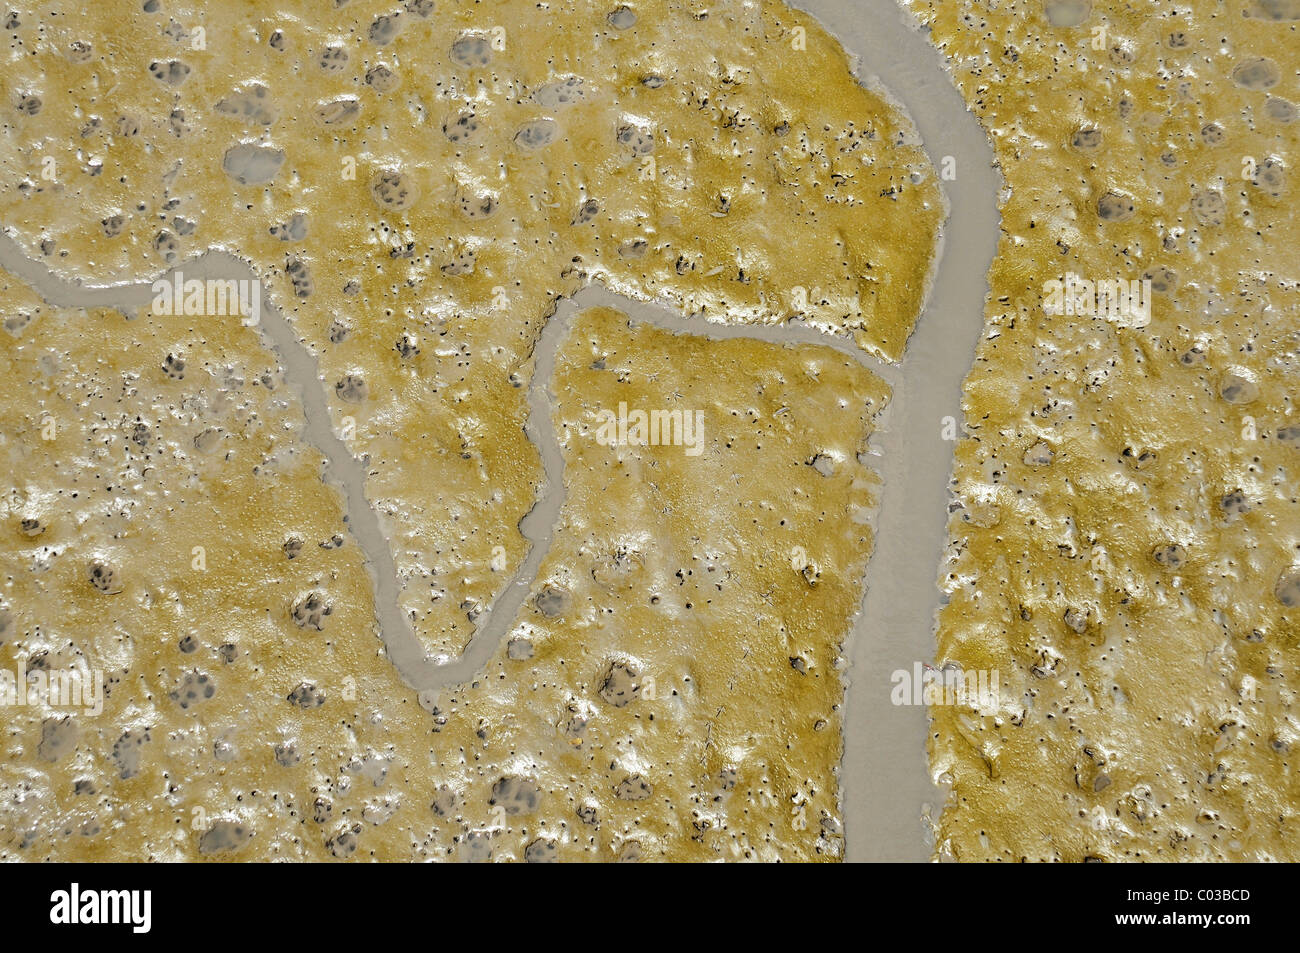 Tierspuren und Entwässerungsrinnen im Wattenmeer, Mangroven Küste in Buenaventura, Kolumbien, Südamerika Stockfoto